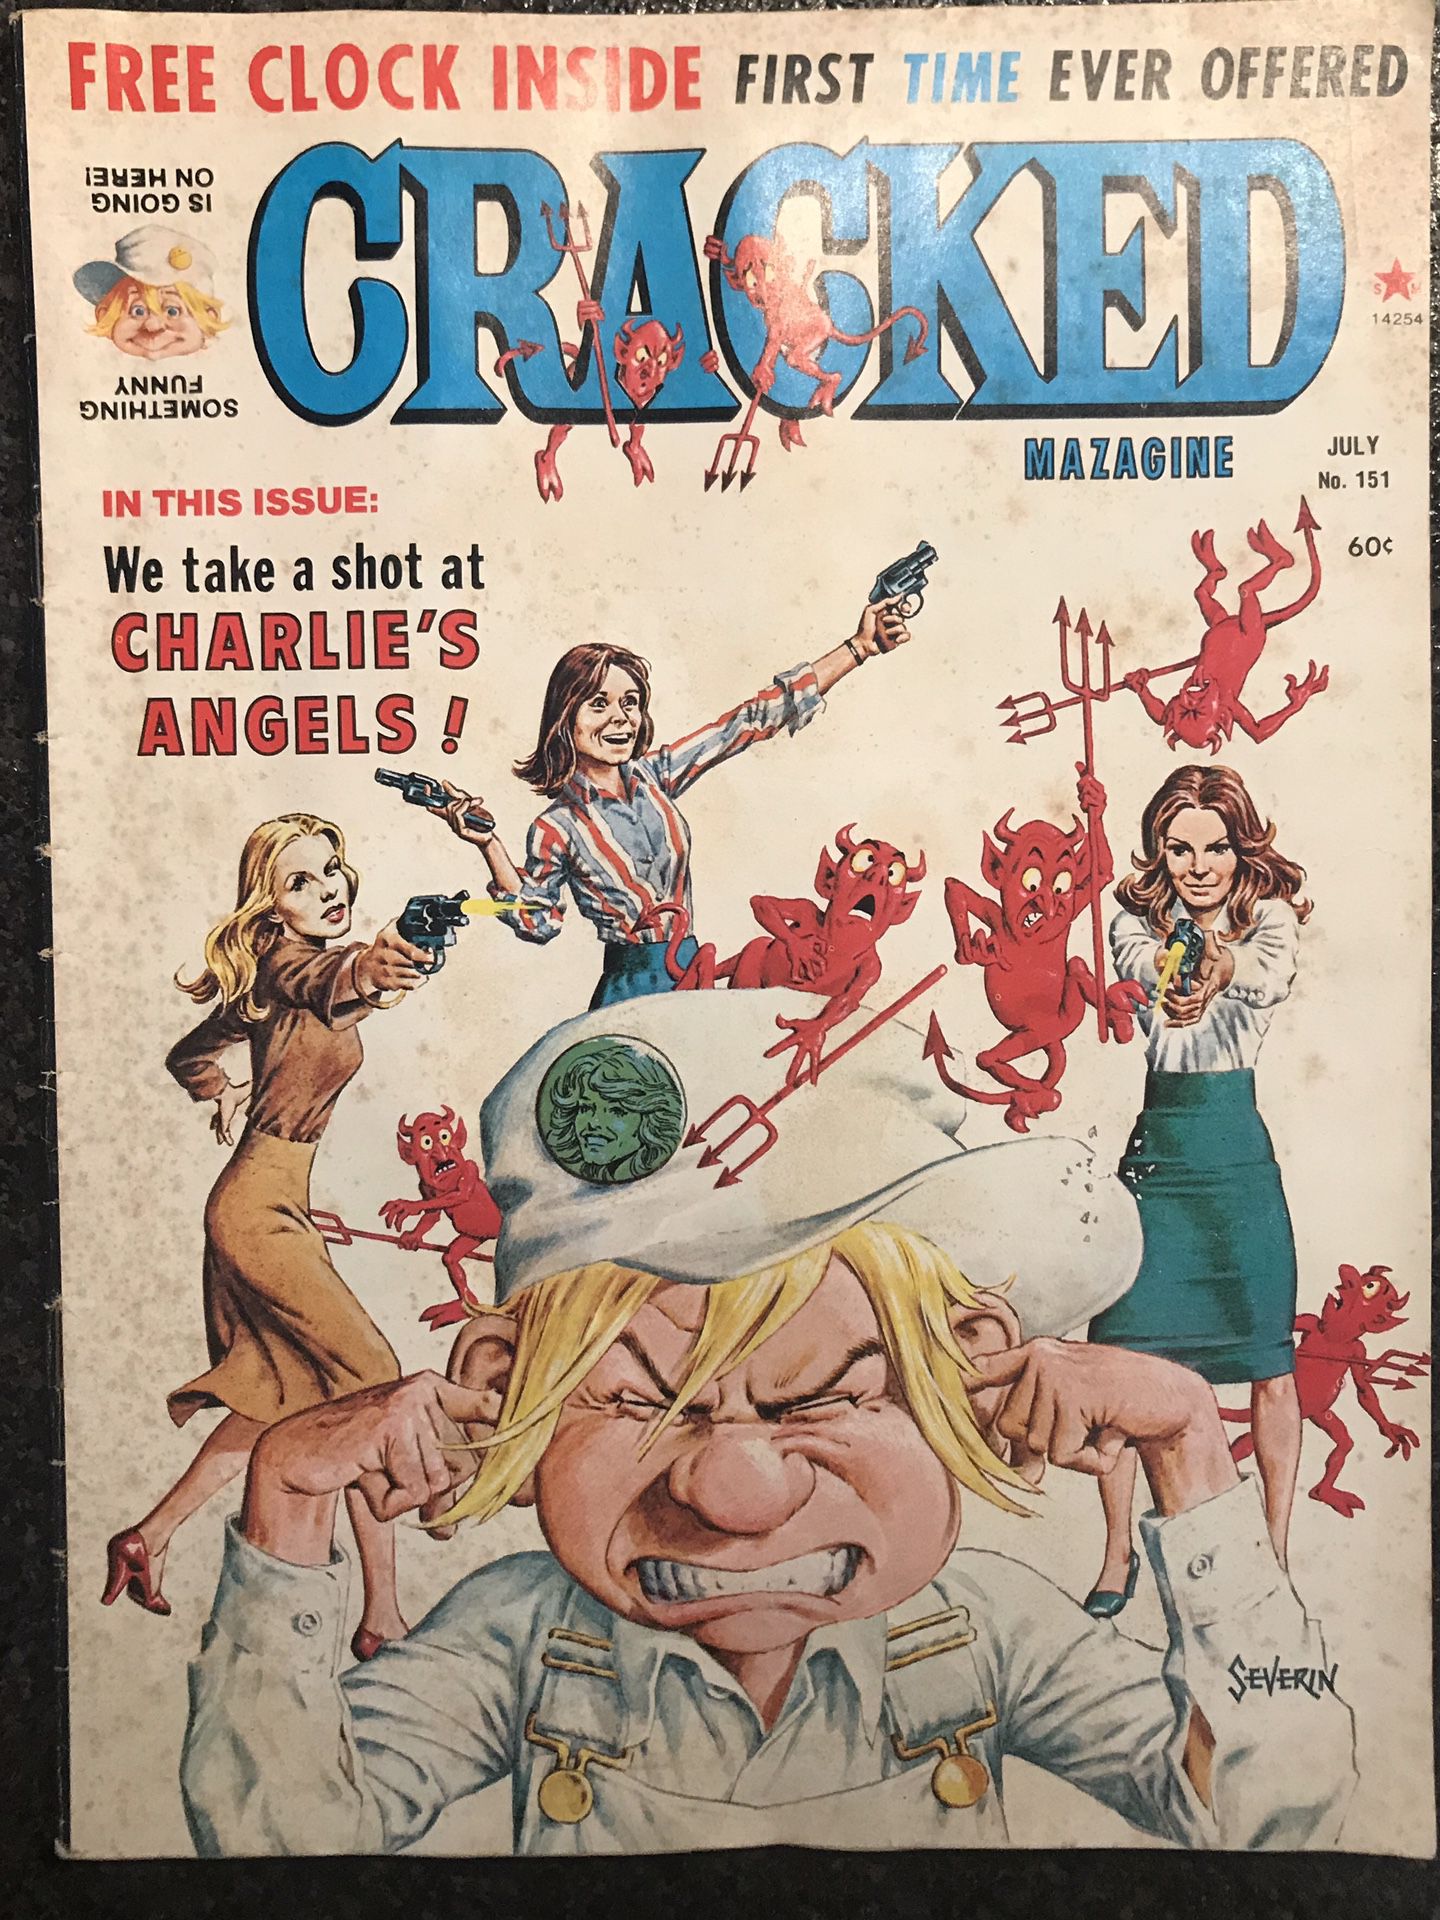 CRACKED Magazine - July 1978